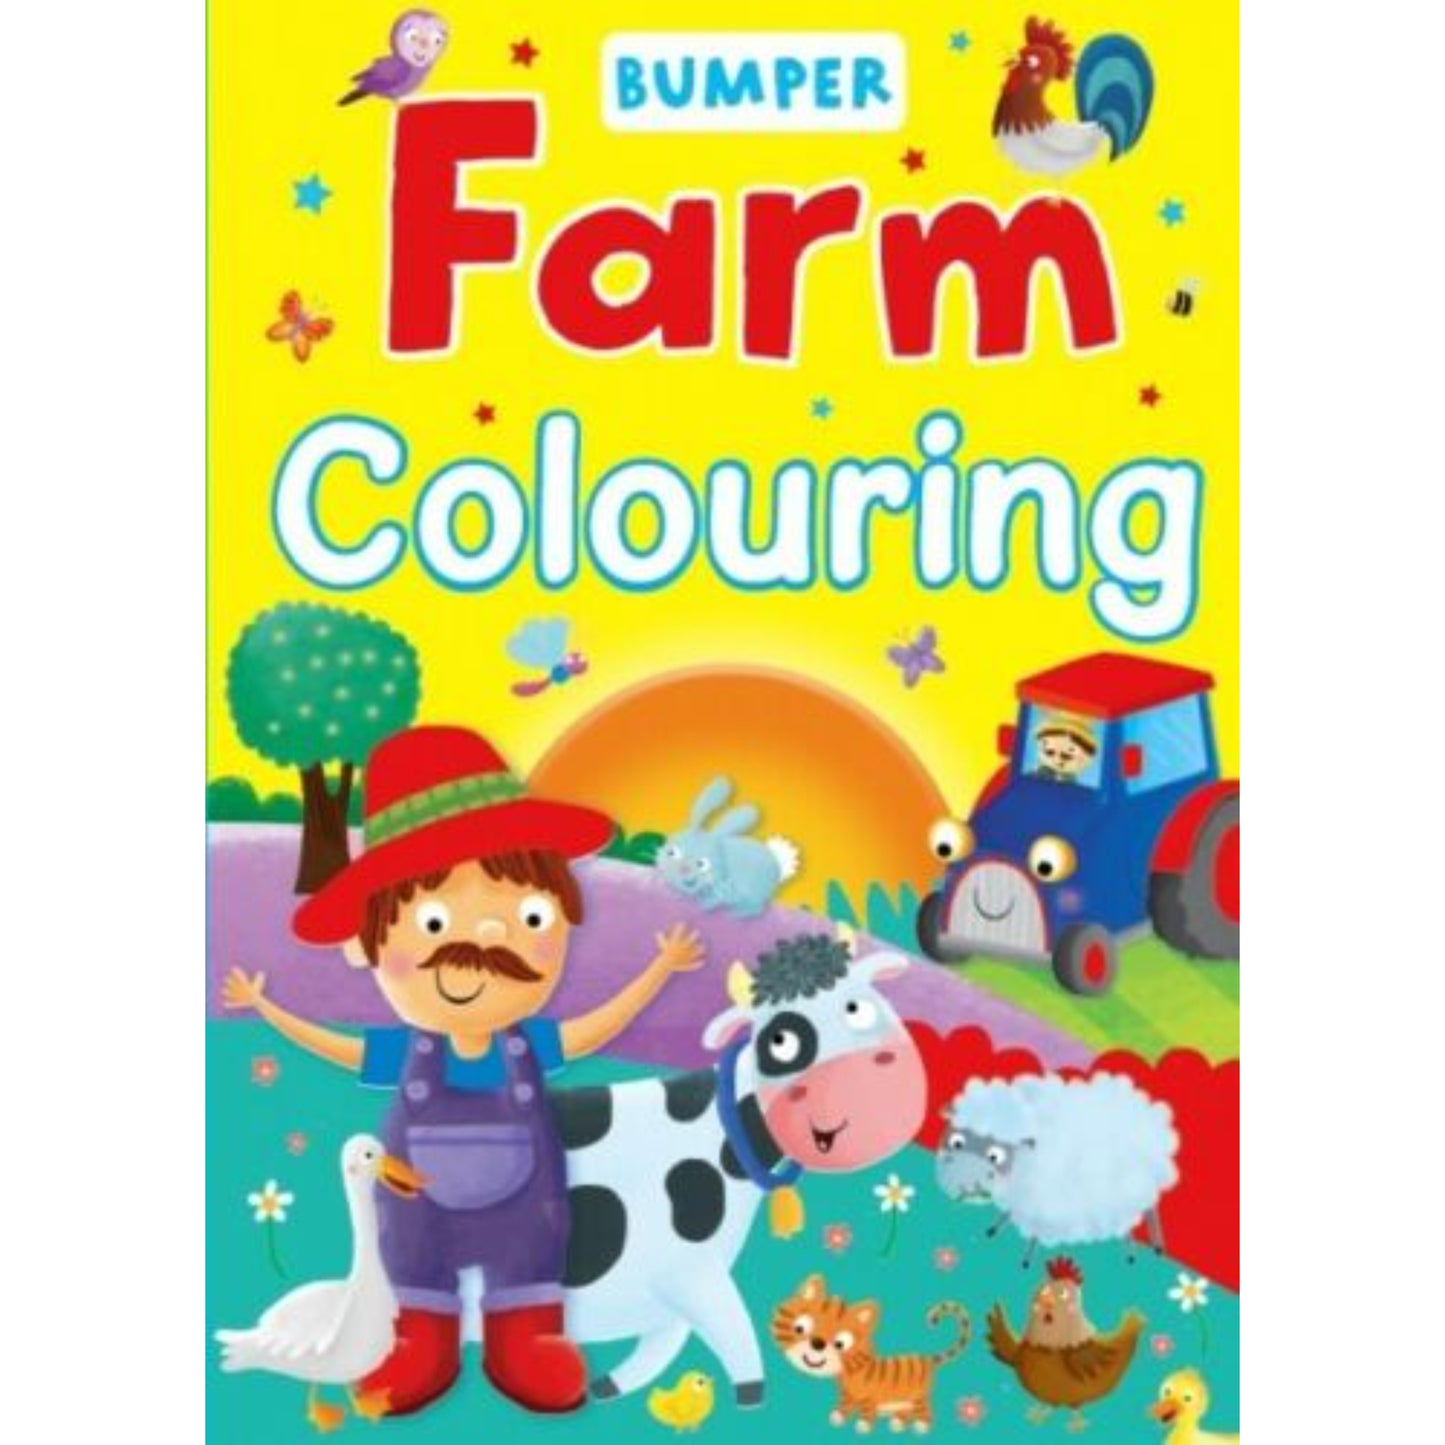 Bumper Farm Colouring